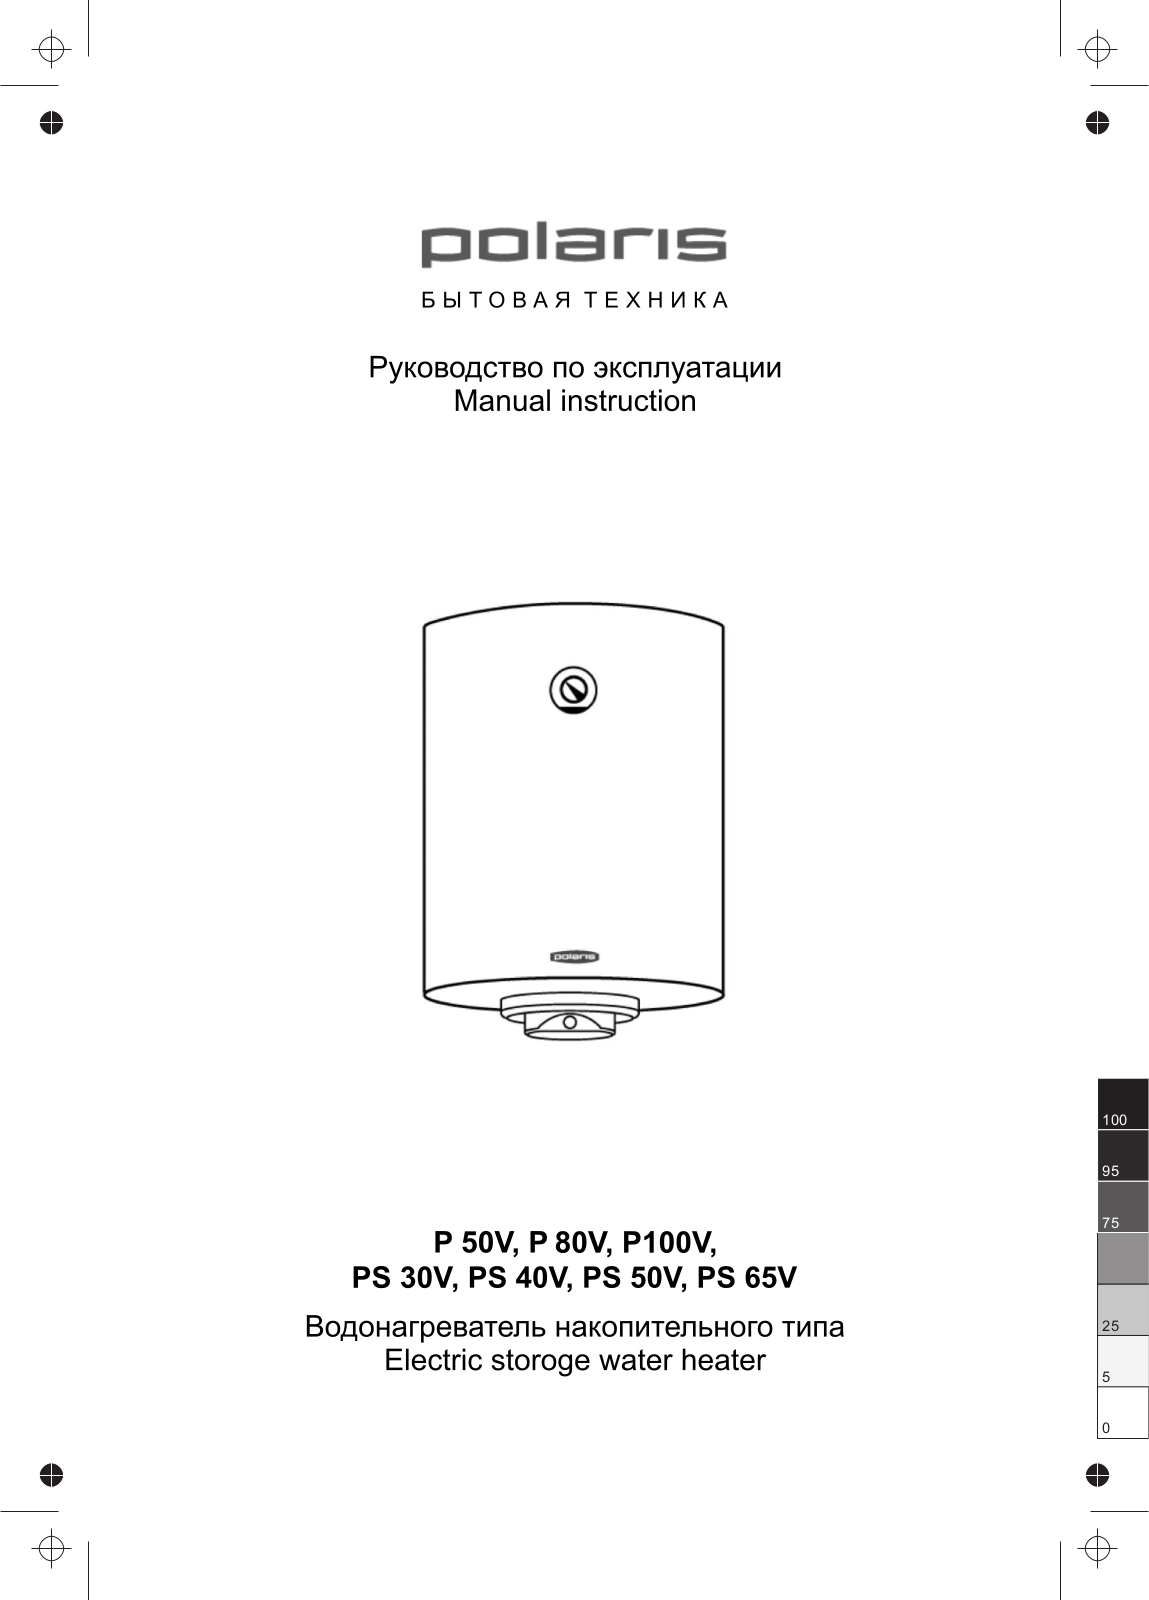 Polaris P 100V, P 80V, PS 40V, PS 50V, PS 65V User manual